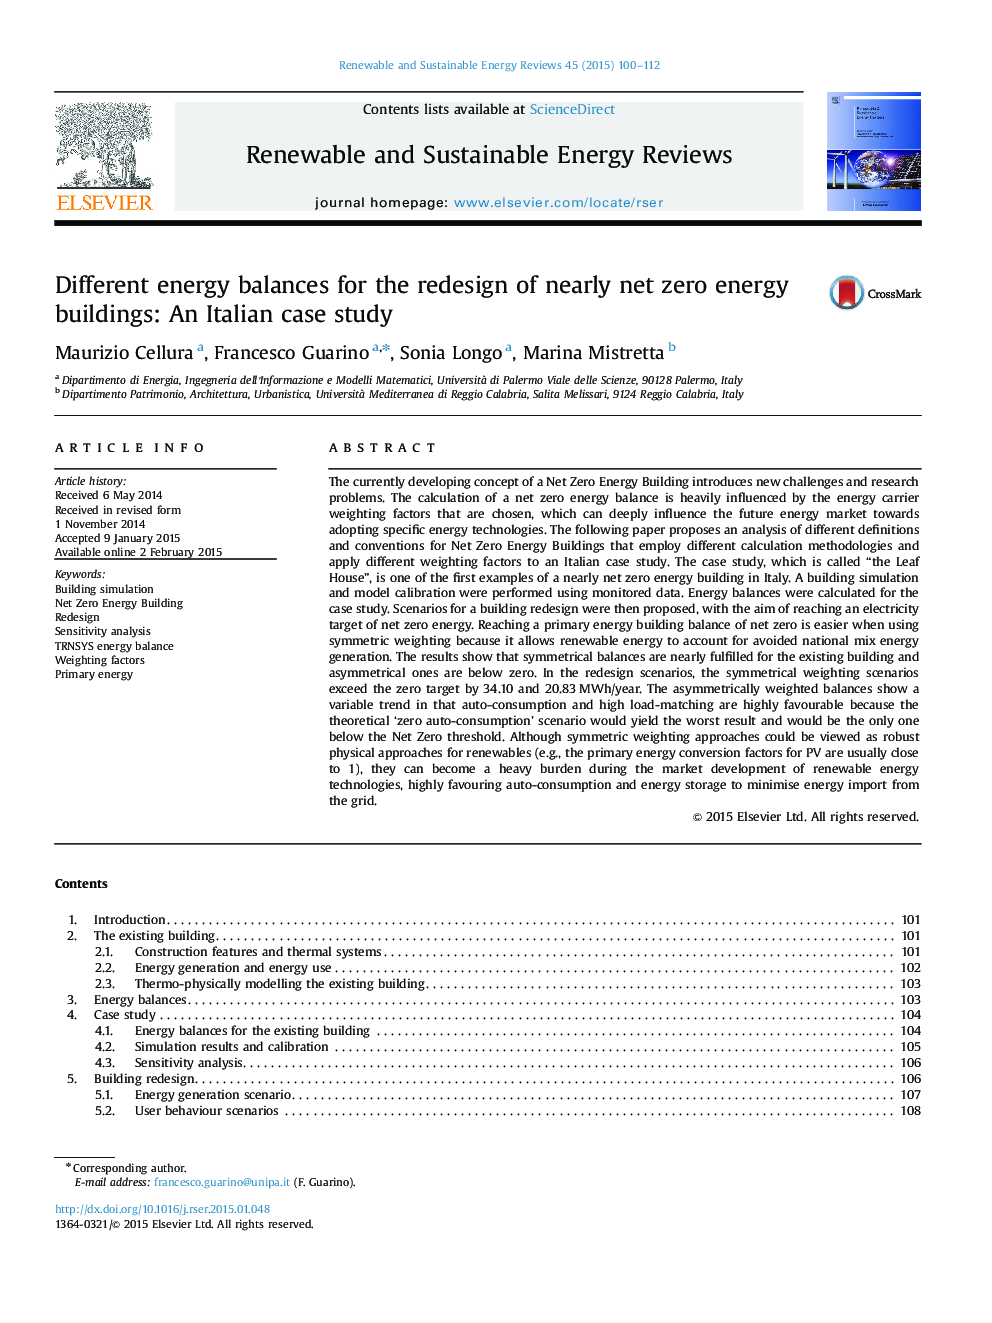 تعادل انرژی های مختلف برای طراحی مجدد ساختمان های نزدیک به خالص صفر: مطالعه موردی ایتالیا 